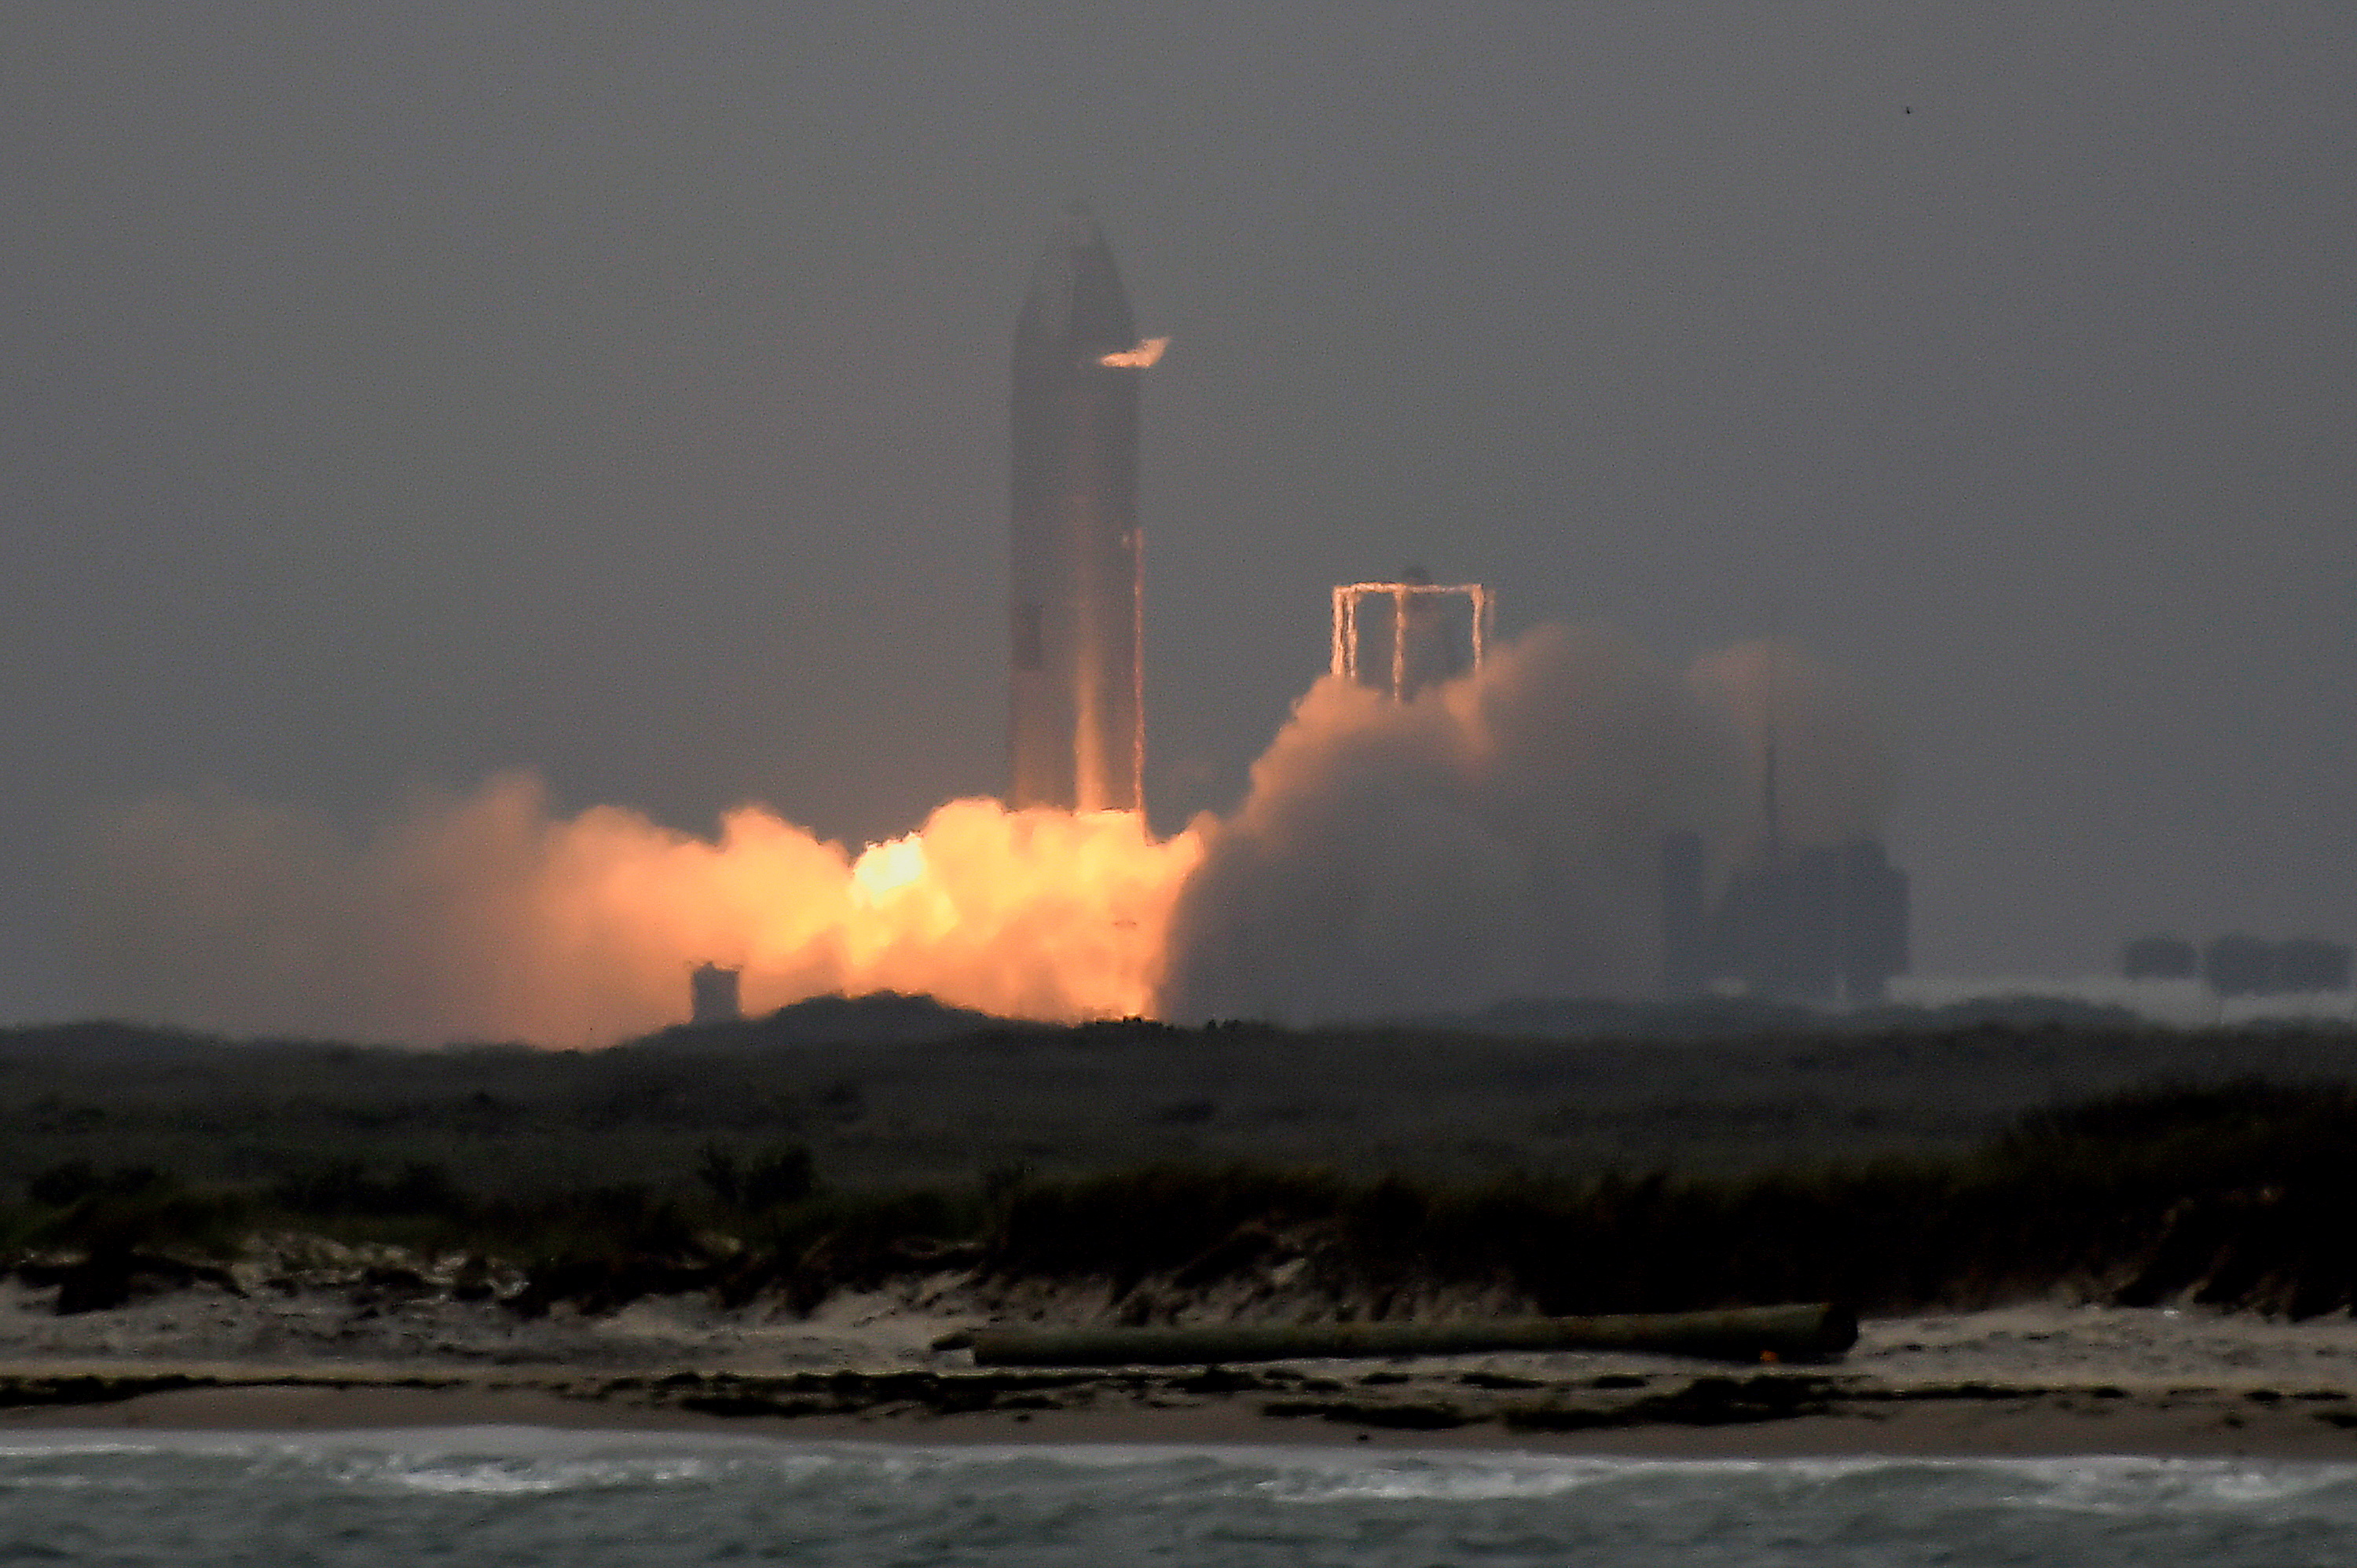 El más reciente y exitoso lanzamiento del "Starship", un prototipo de SpaceX, el más grande cohete espacial desde el "Saturn V" que lanzó la misión Apolo 11 a la luna. Antes, dos intentos habían terminado en bolas de fuego
1. REUTERS/Gene Blevins